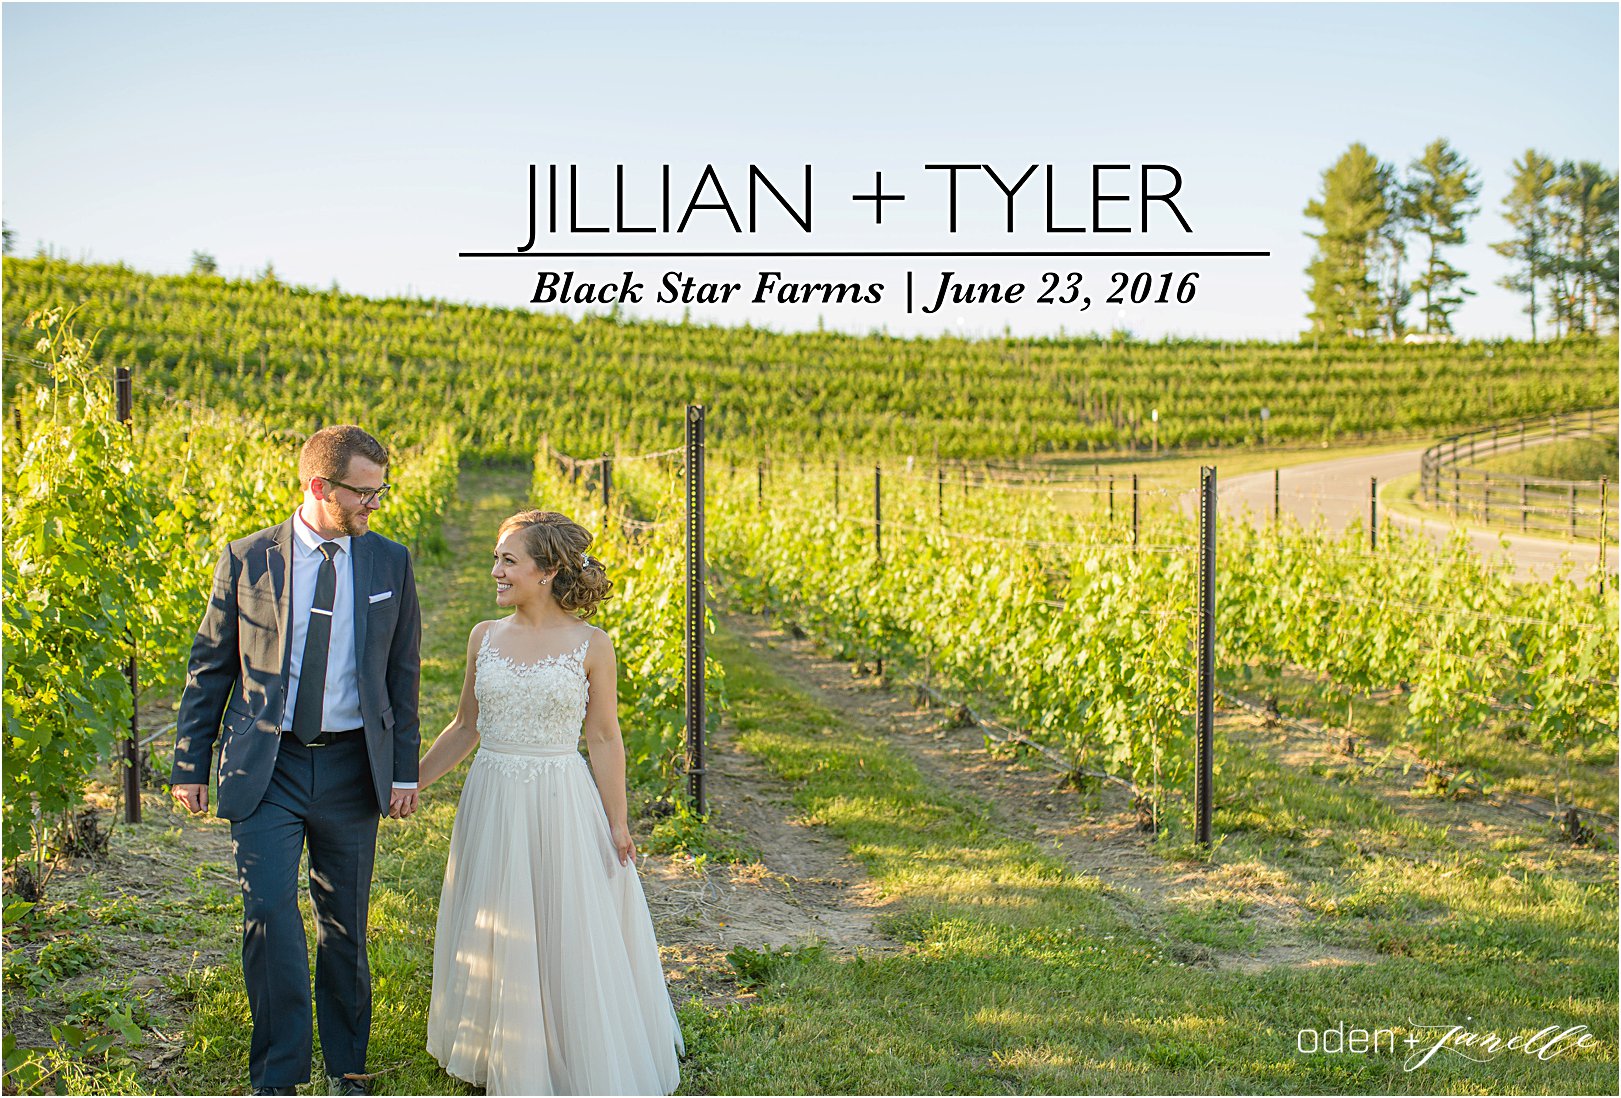 Jill + Tyler - cover |ODE_9763|5.jpg